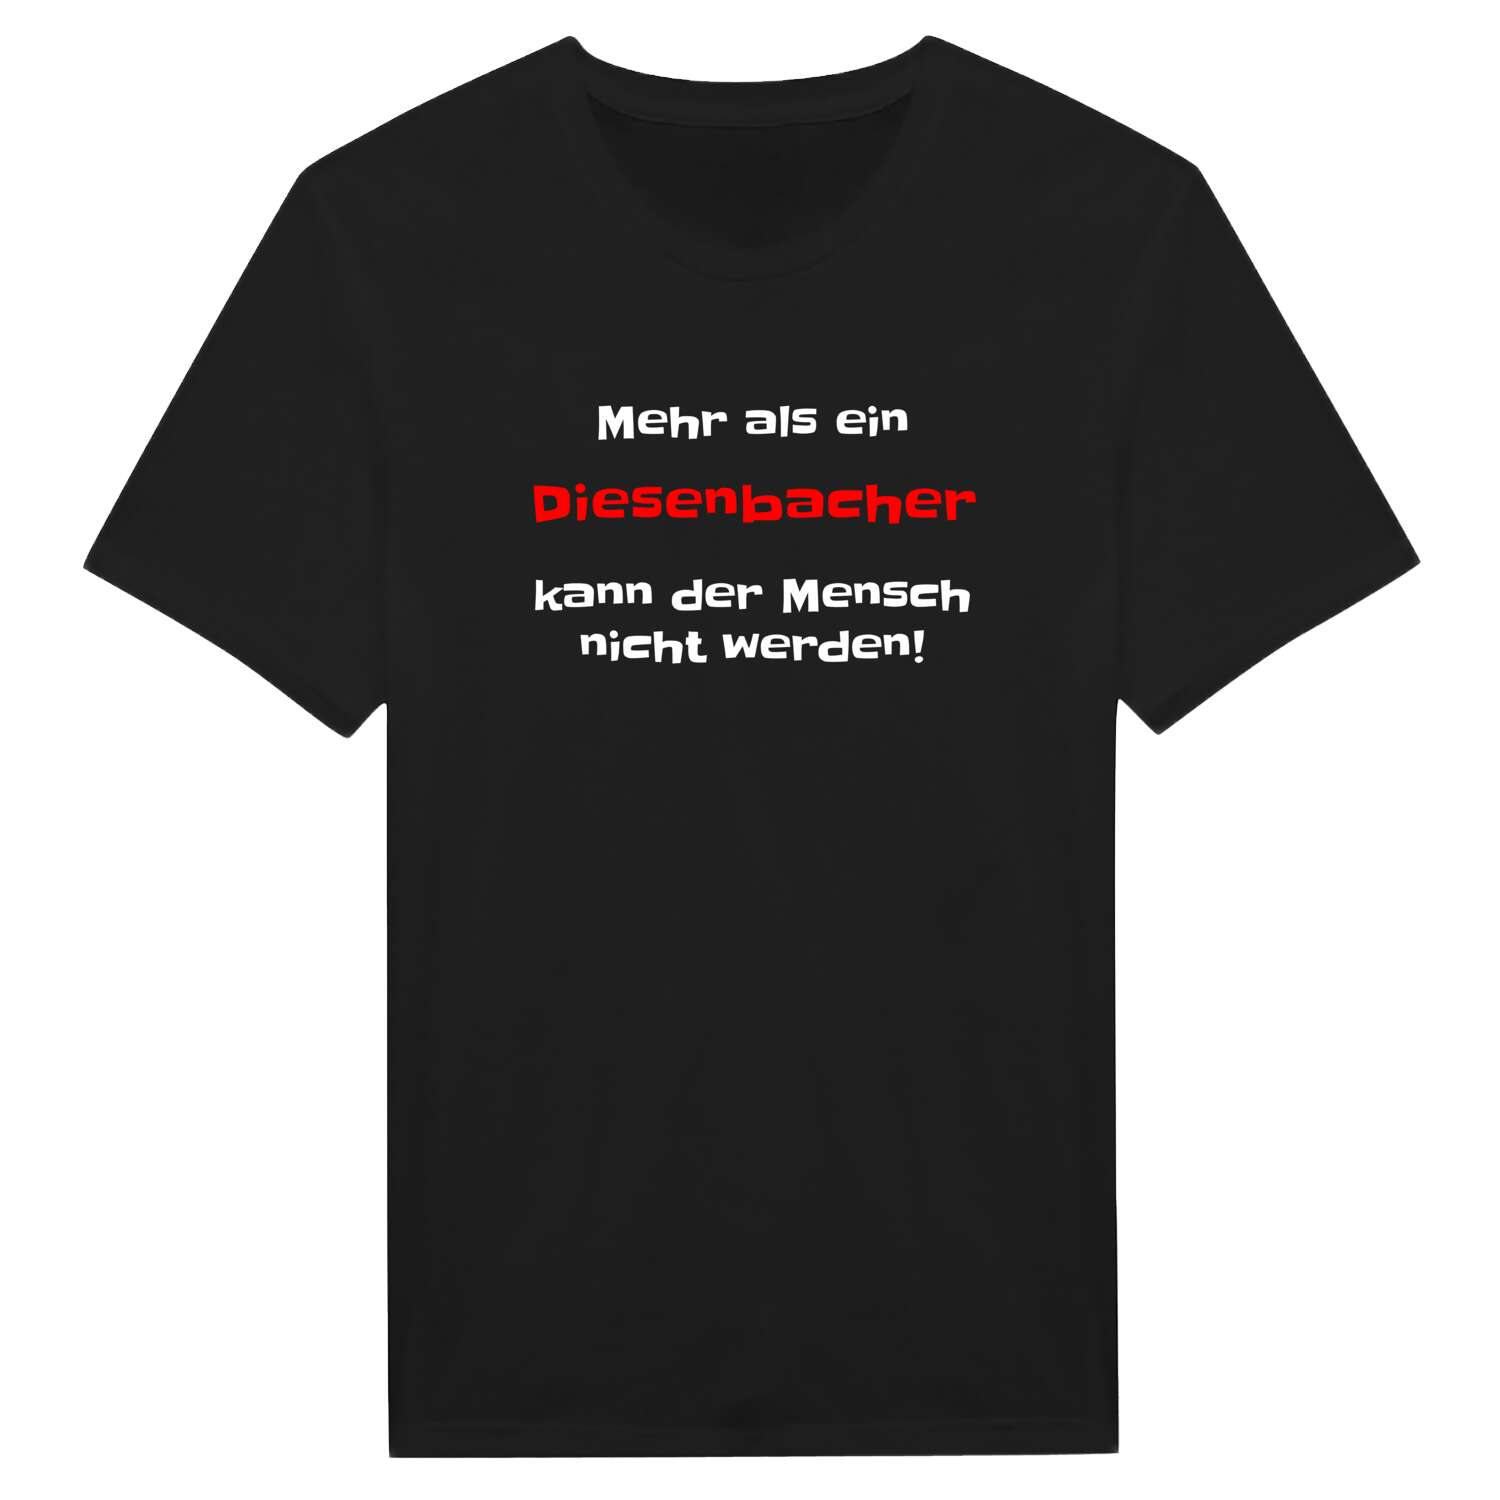 Diesenbach T-Shirt »Mehr als ein«